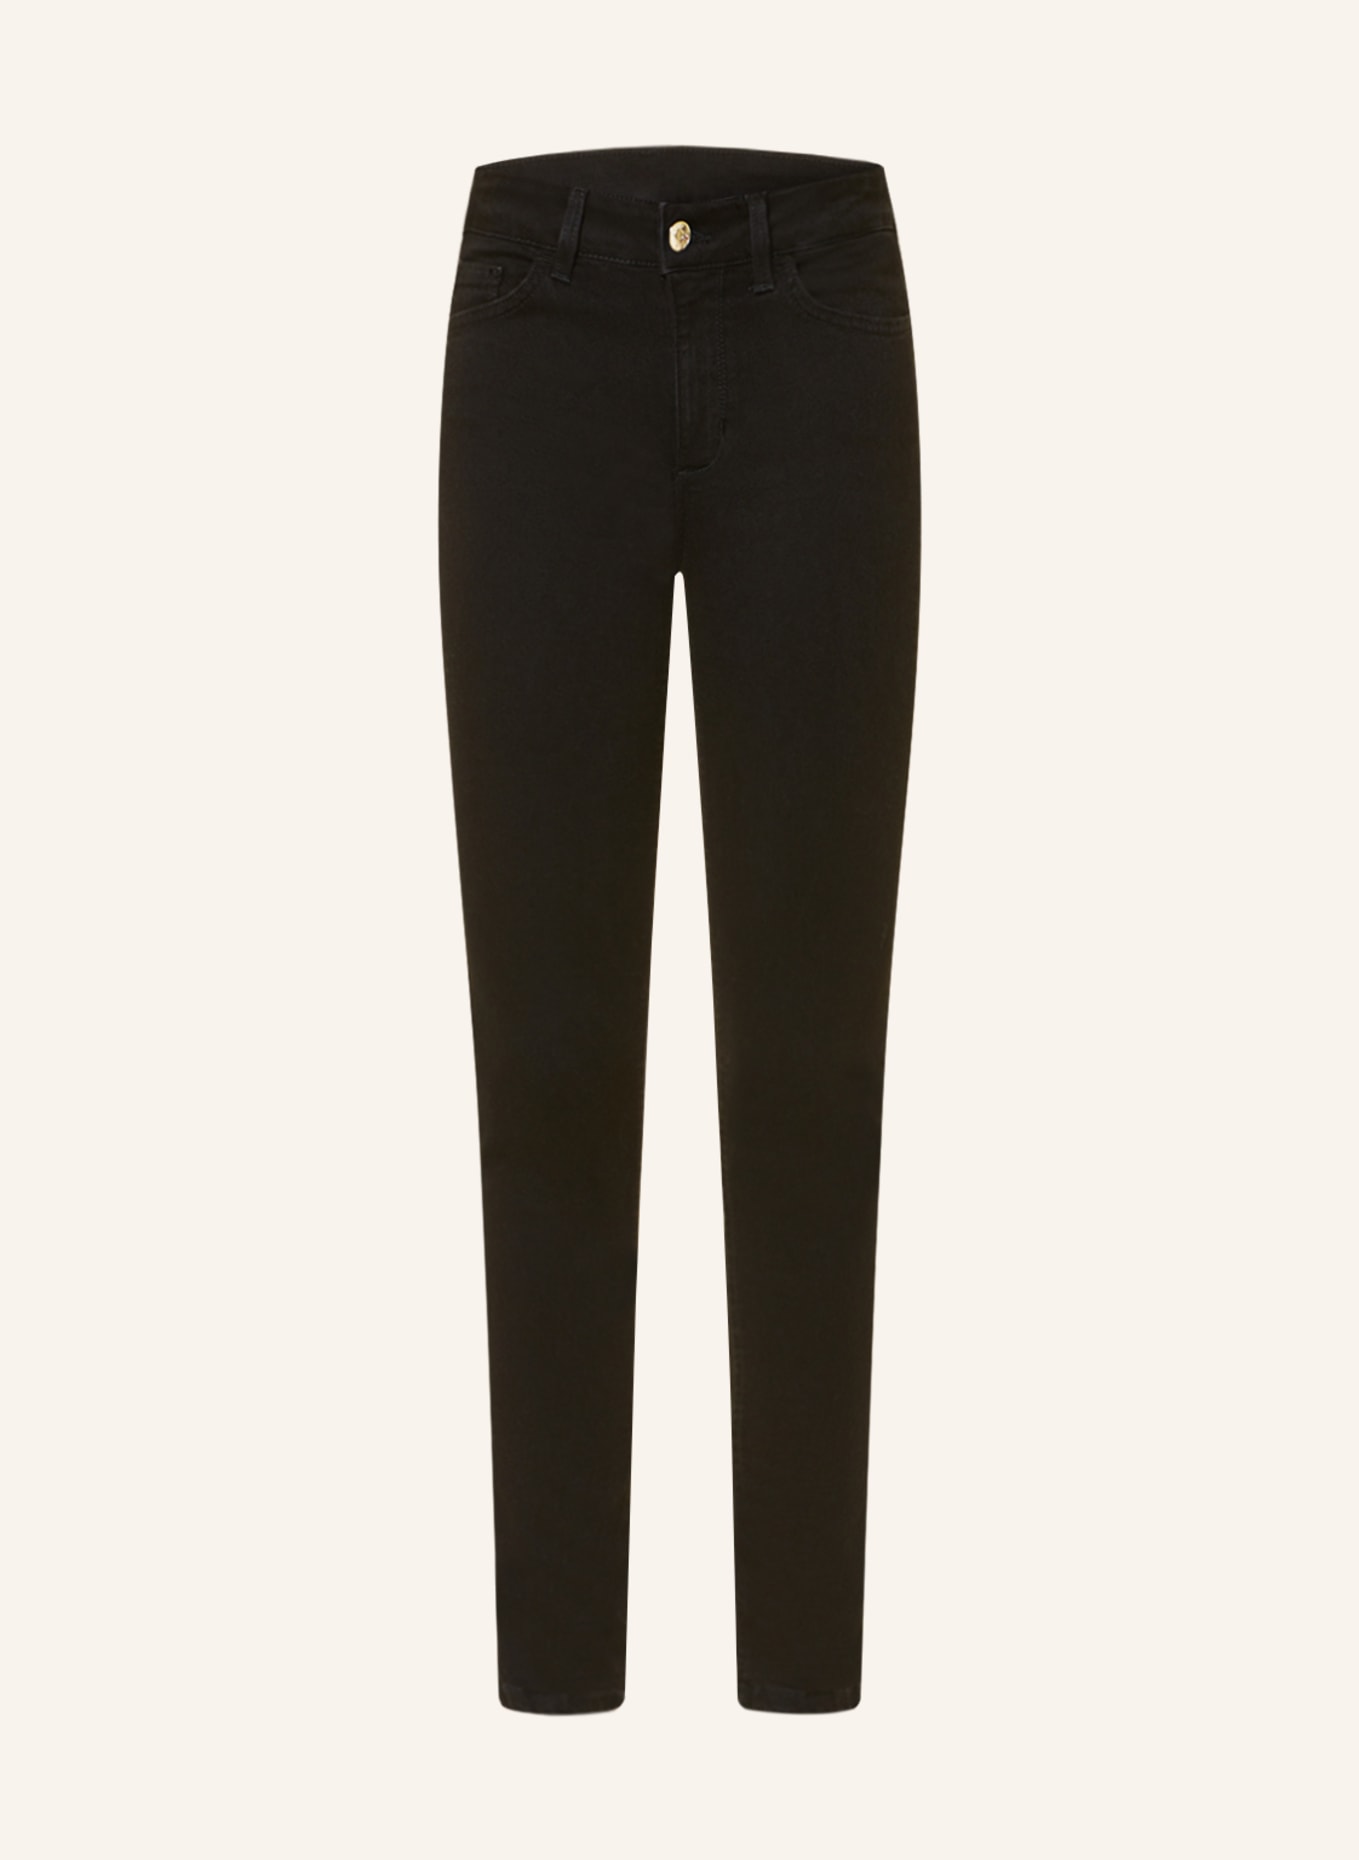 LIU JO Skinny Jeans mit Schmucksteinen, Farbe: 88000 Den.Nero normal wash (Bild 1)